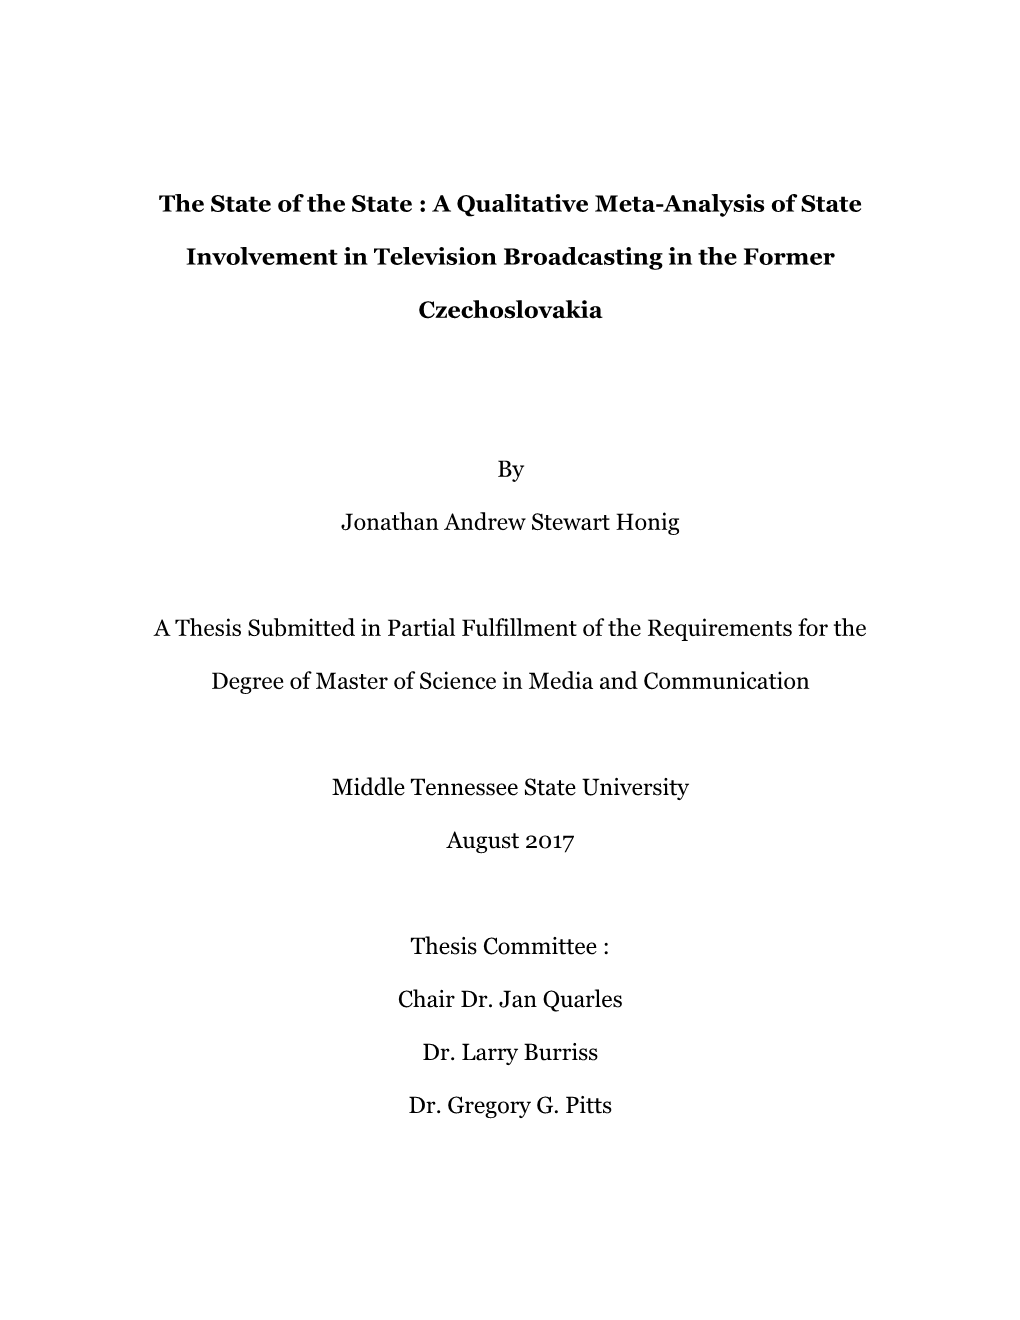 A Qualitative Meta-Analysis of State